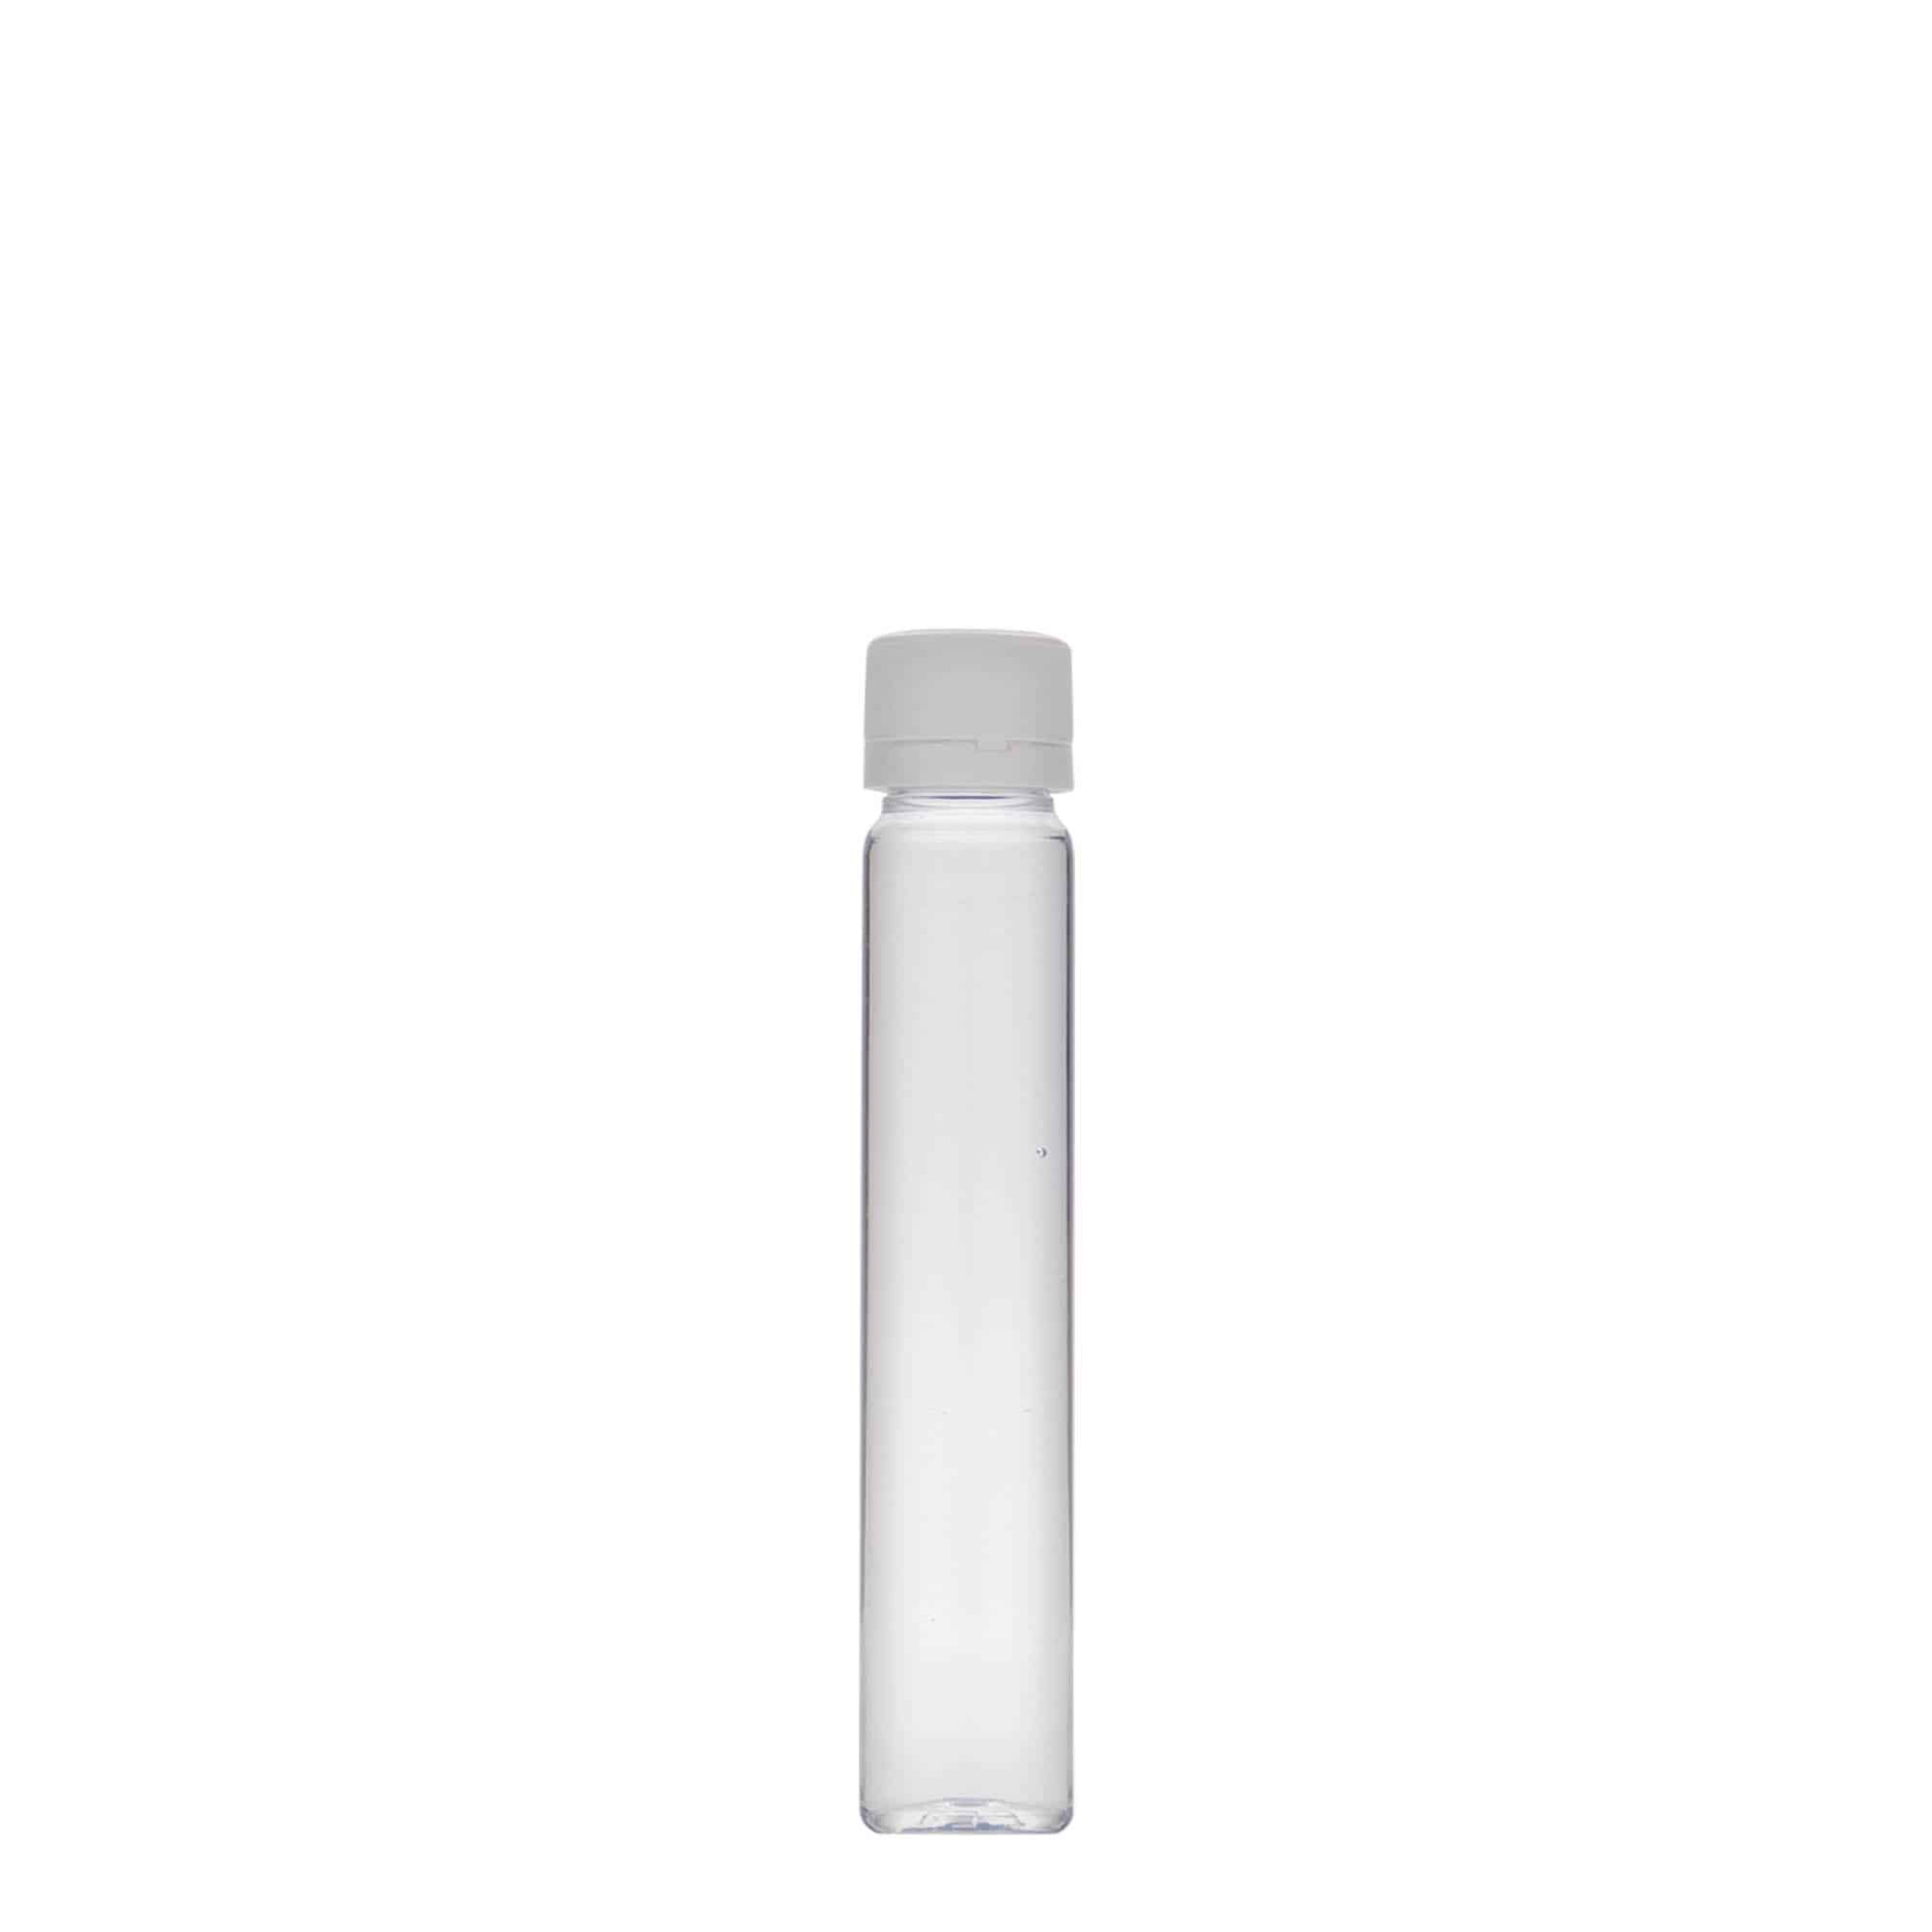 25 ml PET tube, plastic, closure: screw cap